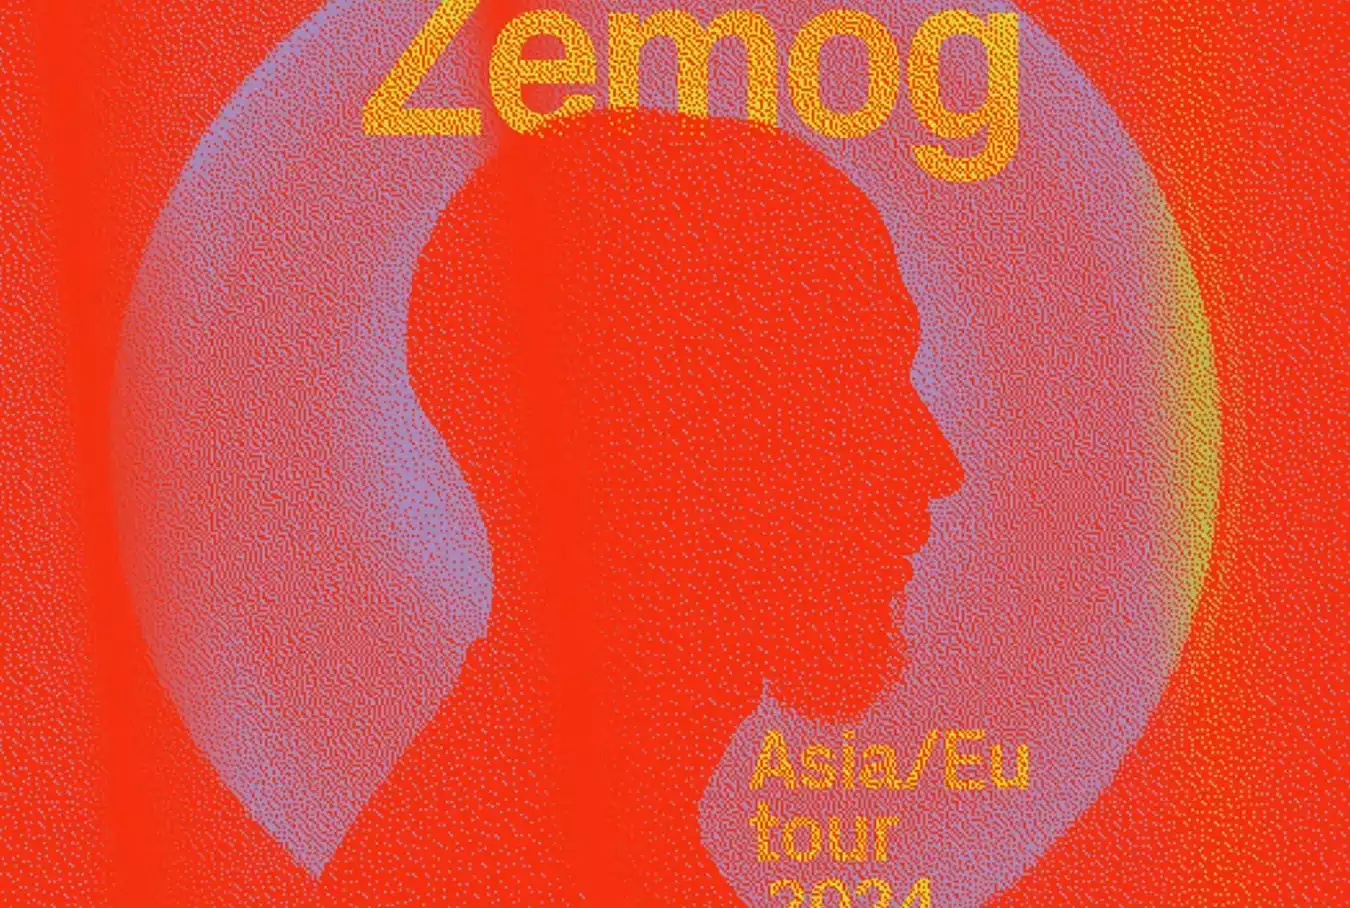 El continente asiático y europeo se sacuden al ritmo de Zemög, cruzando fronteras con su sonido